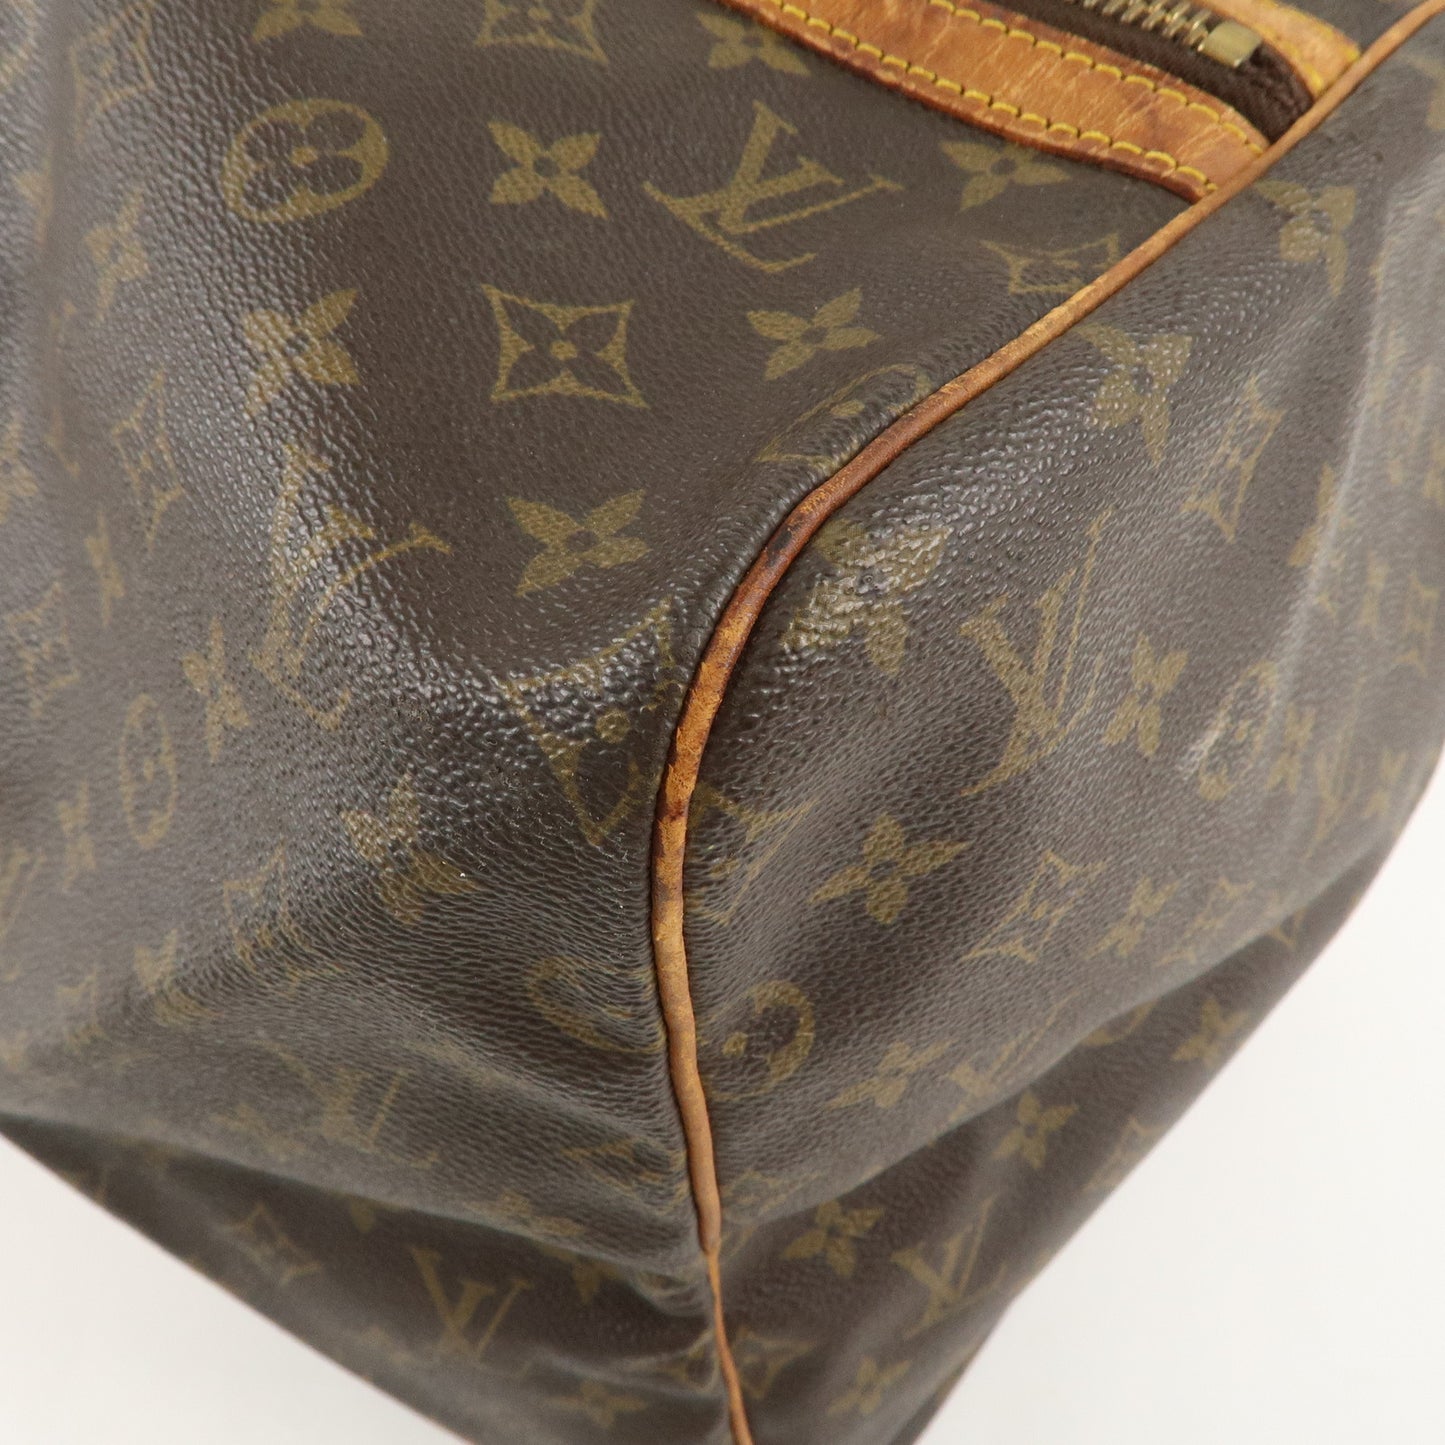 Louis Vuitton Monogram Sac Souple 55 Boston Bag Brown M41622